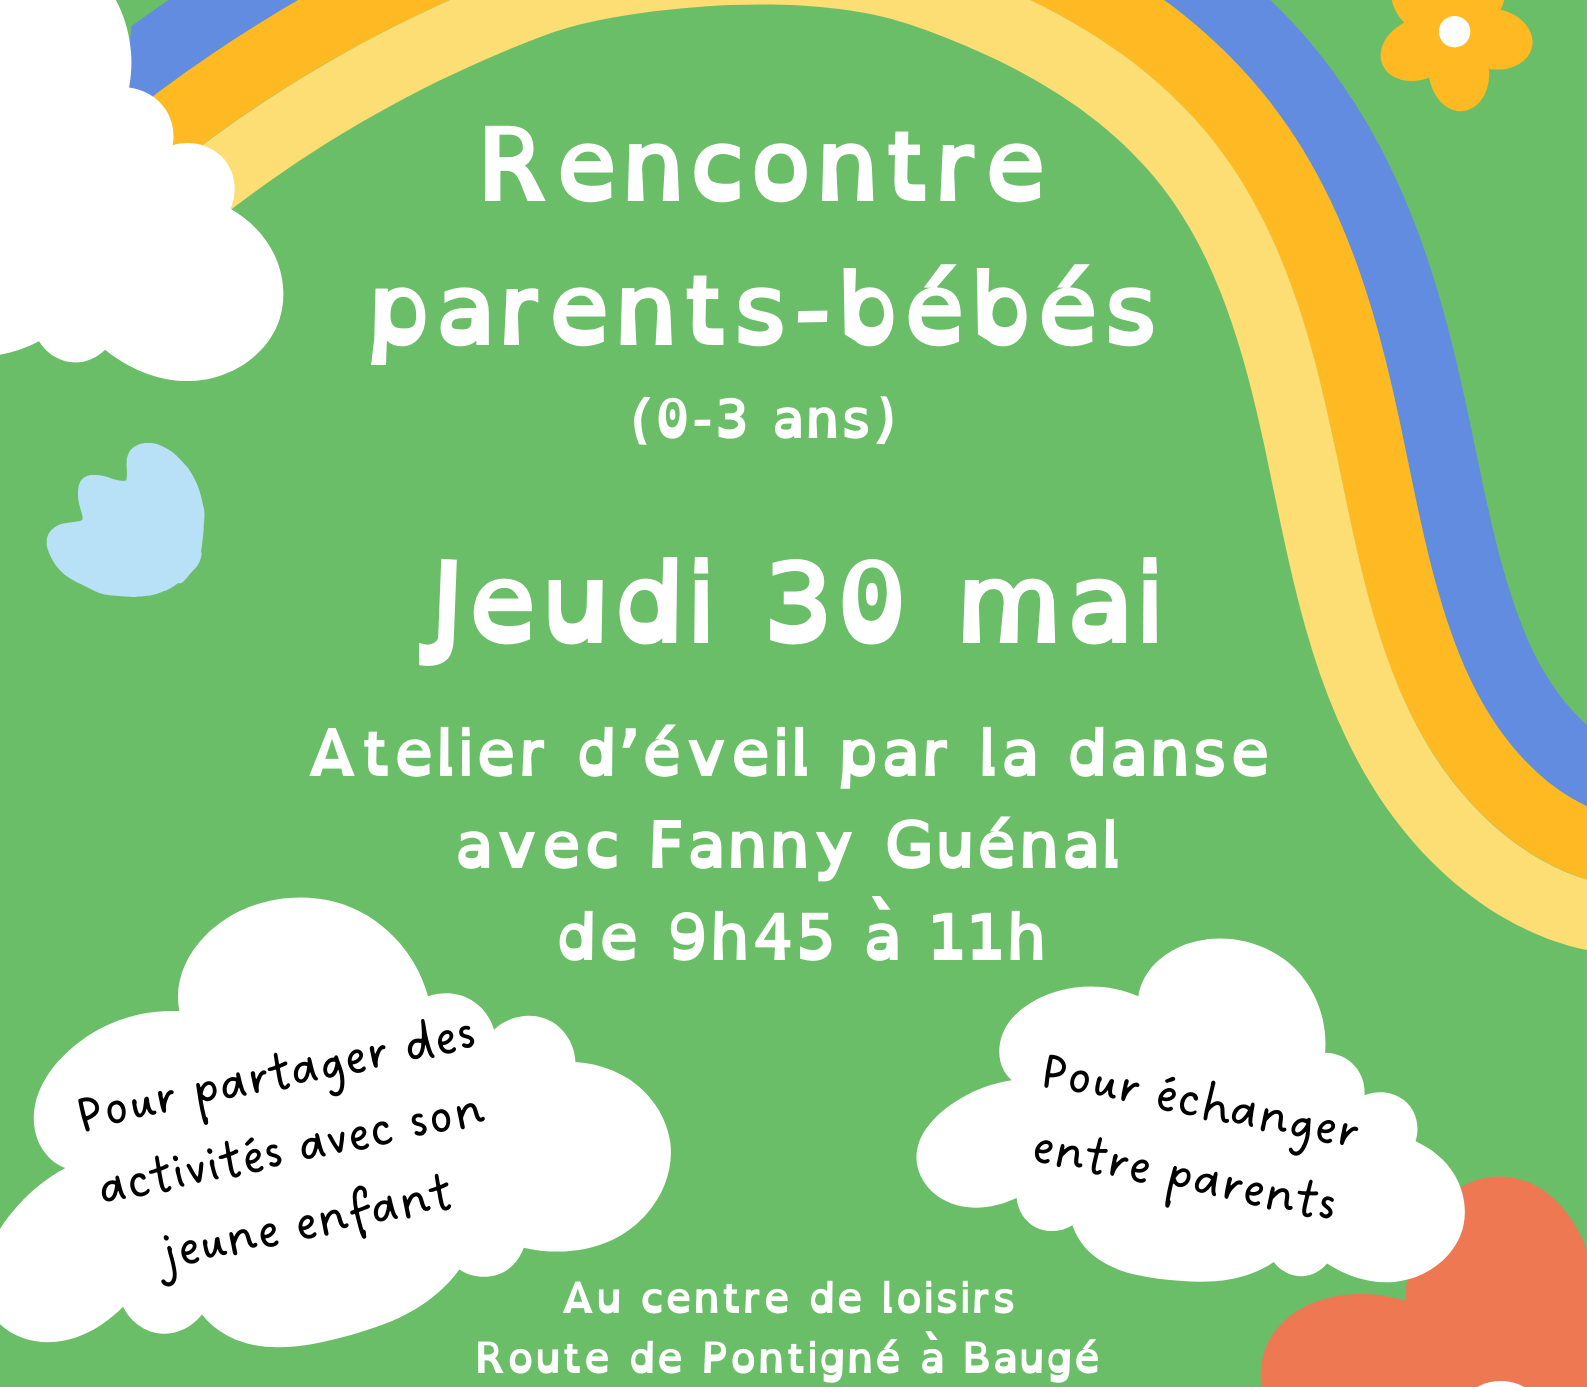 Rencontres parents-bébés, Association Espace Baugeois